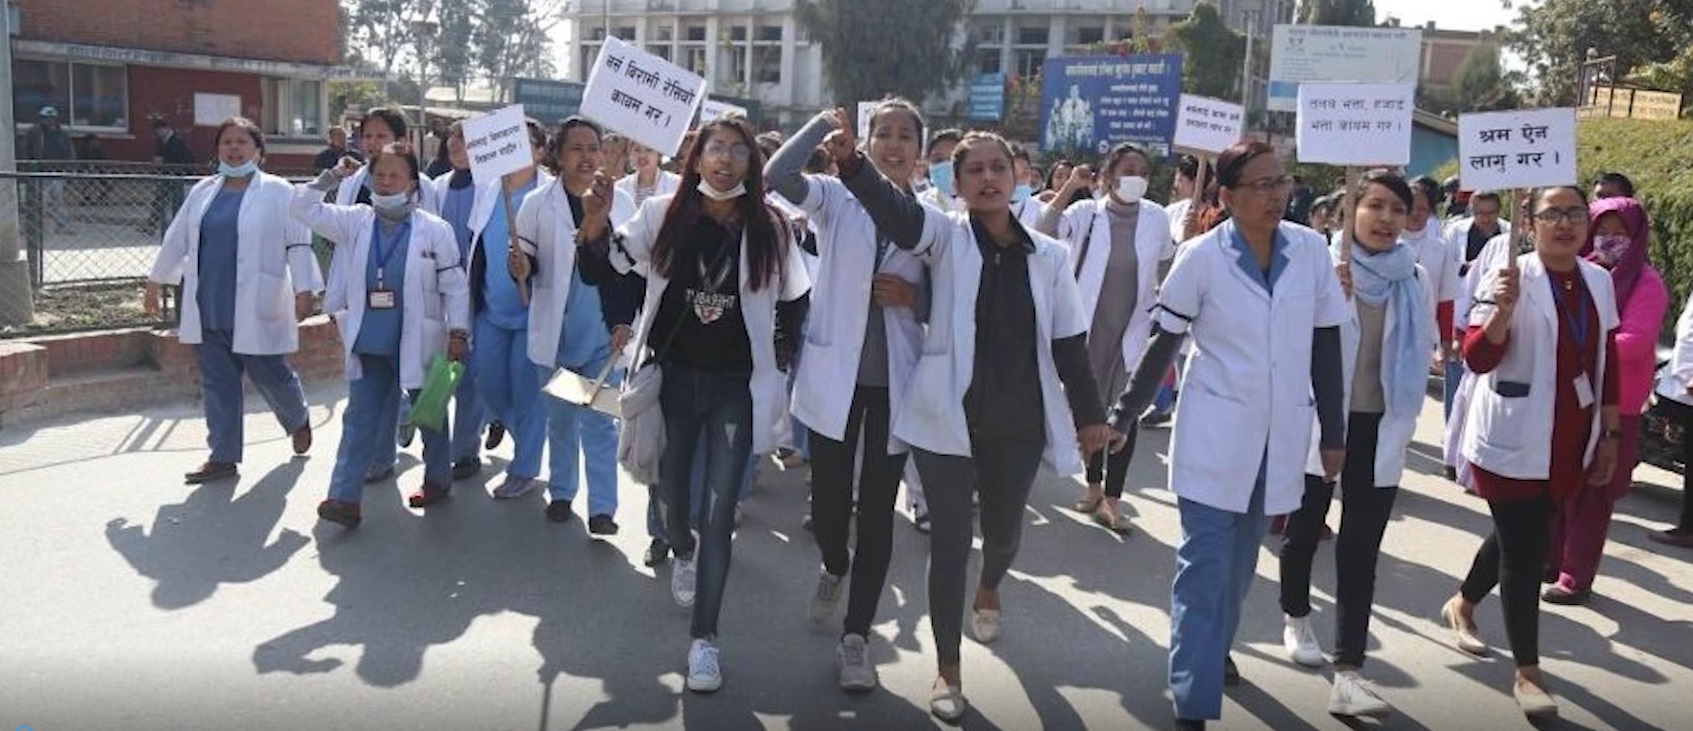 नेपाल मेडिकल कलेज निकालिएका कर्मचारी काममा फर्काउन सहमत